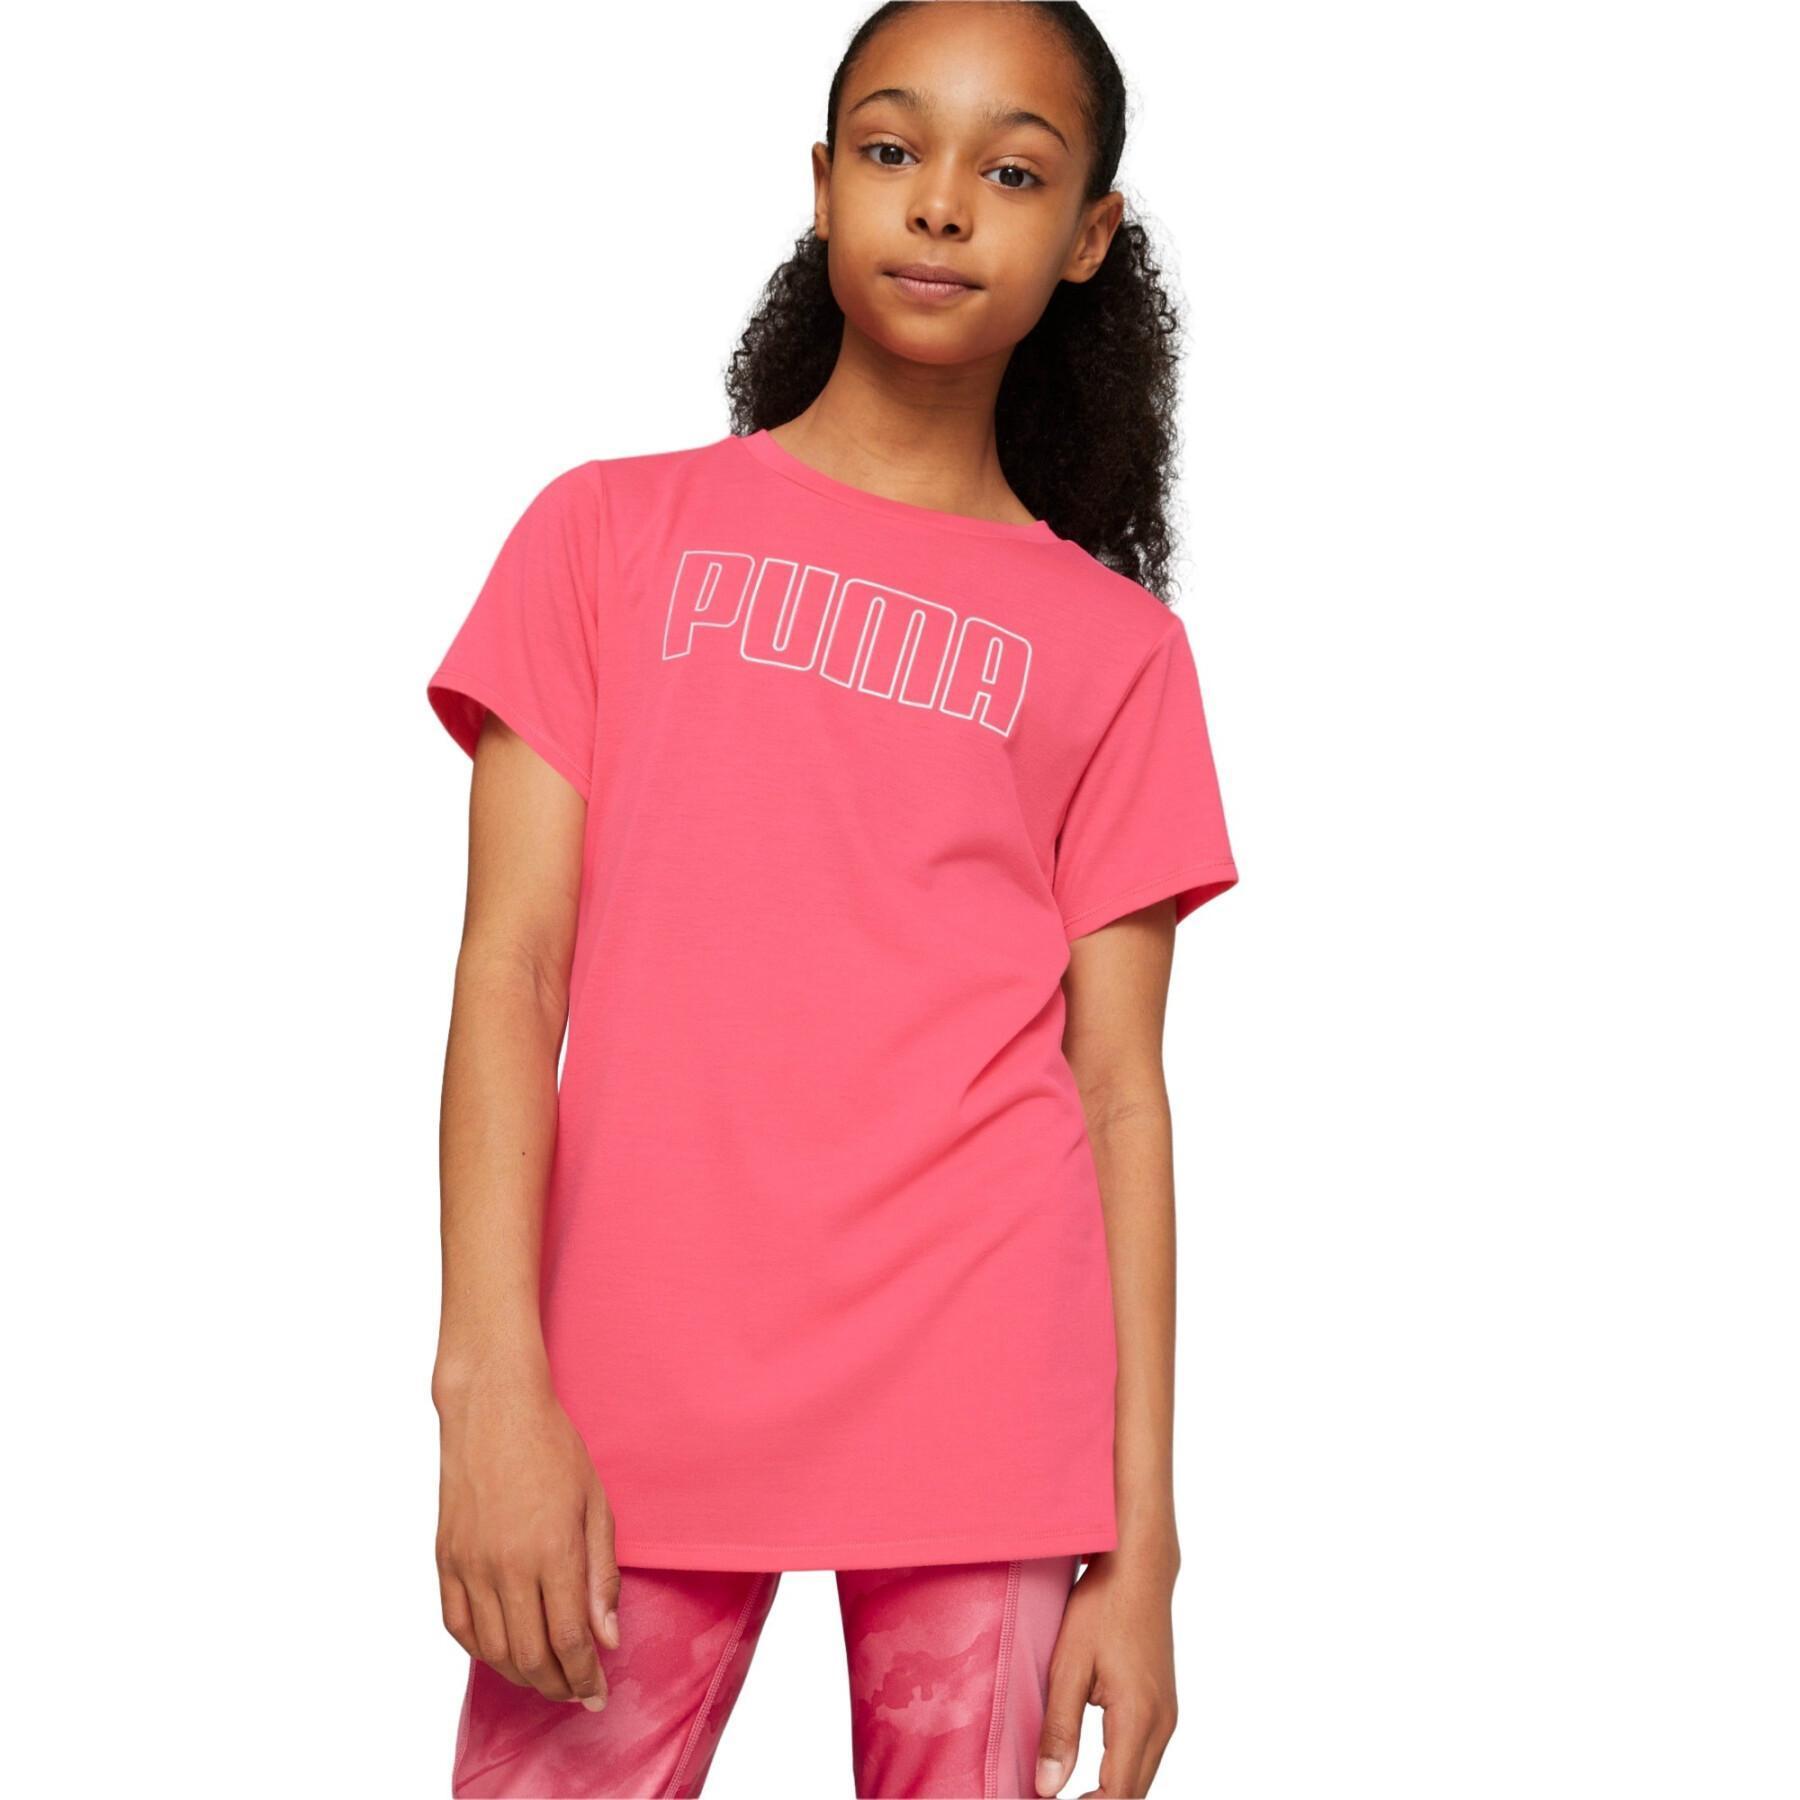 Koszulka dla dziewczynki Puma RT Favorites G